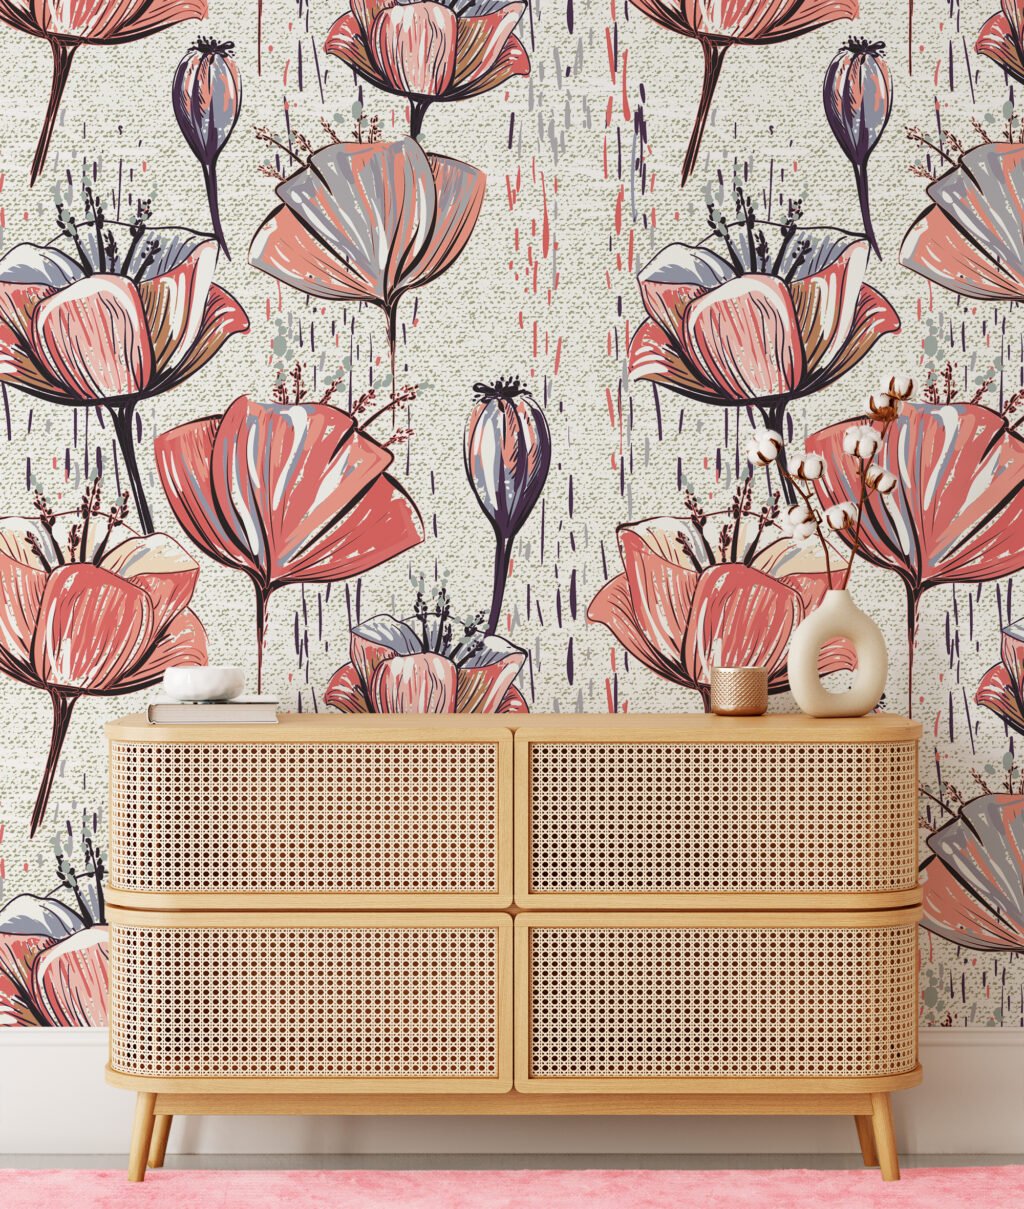 Çiçek İllüstrasyonlu Duvar Kağıdı, Abstract Lale Eskizi 3D Duvar Kağıdı Çiçekli Duvar Kağıtları 4